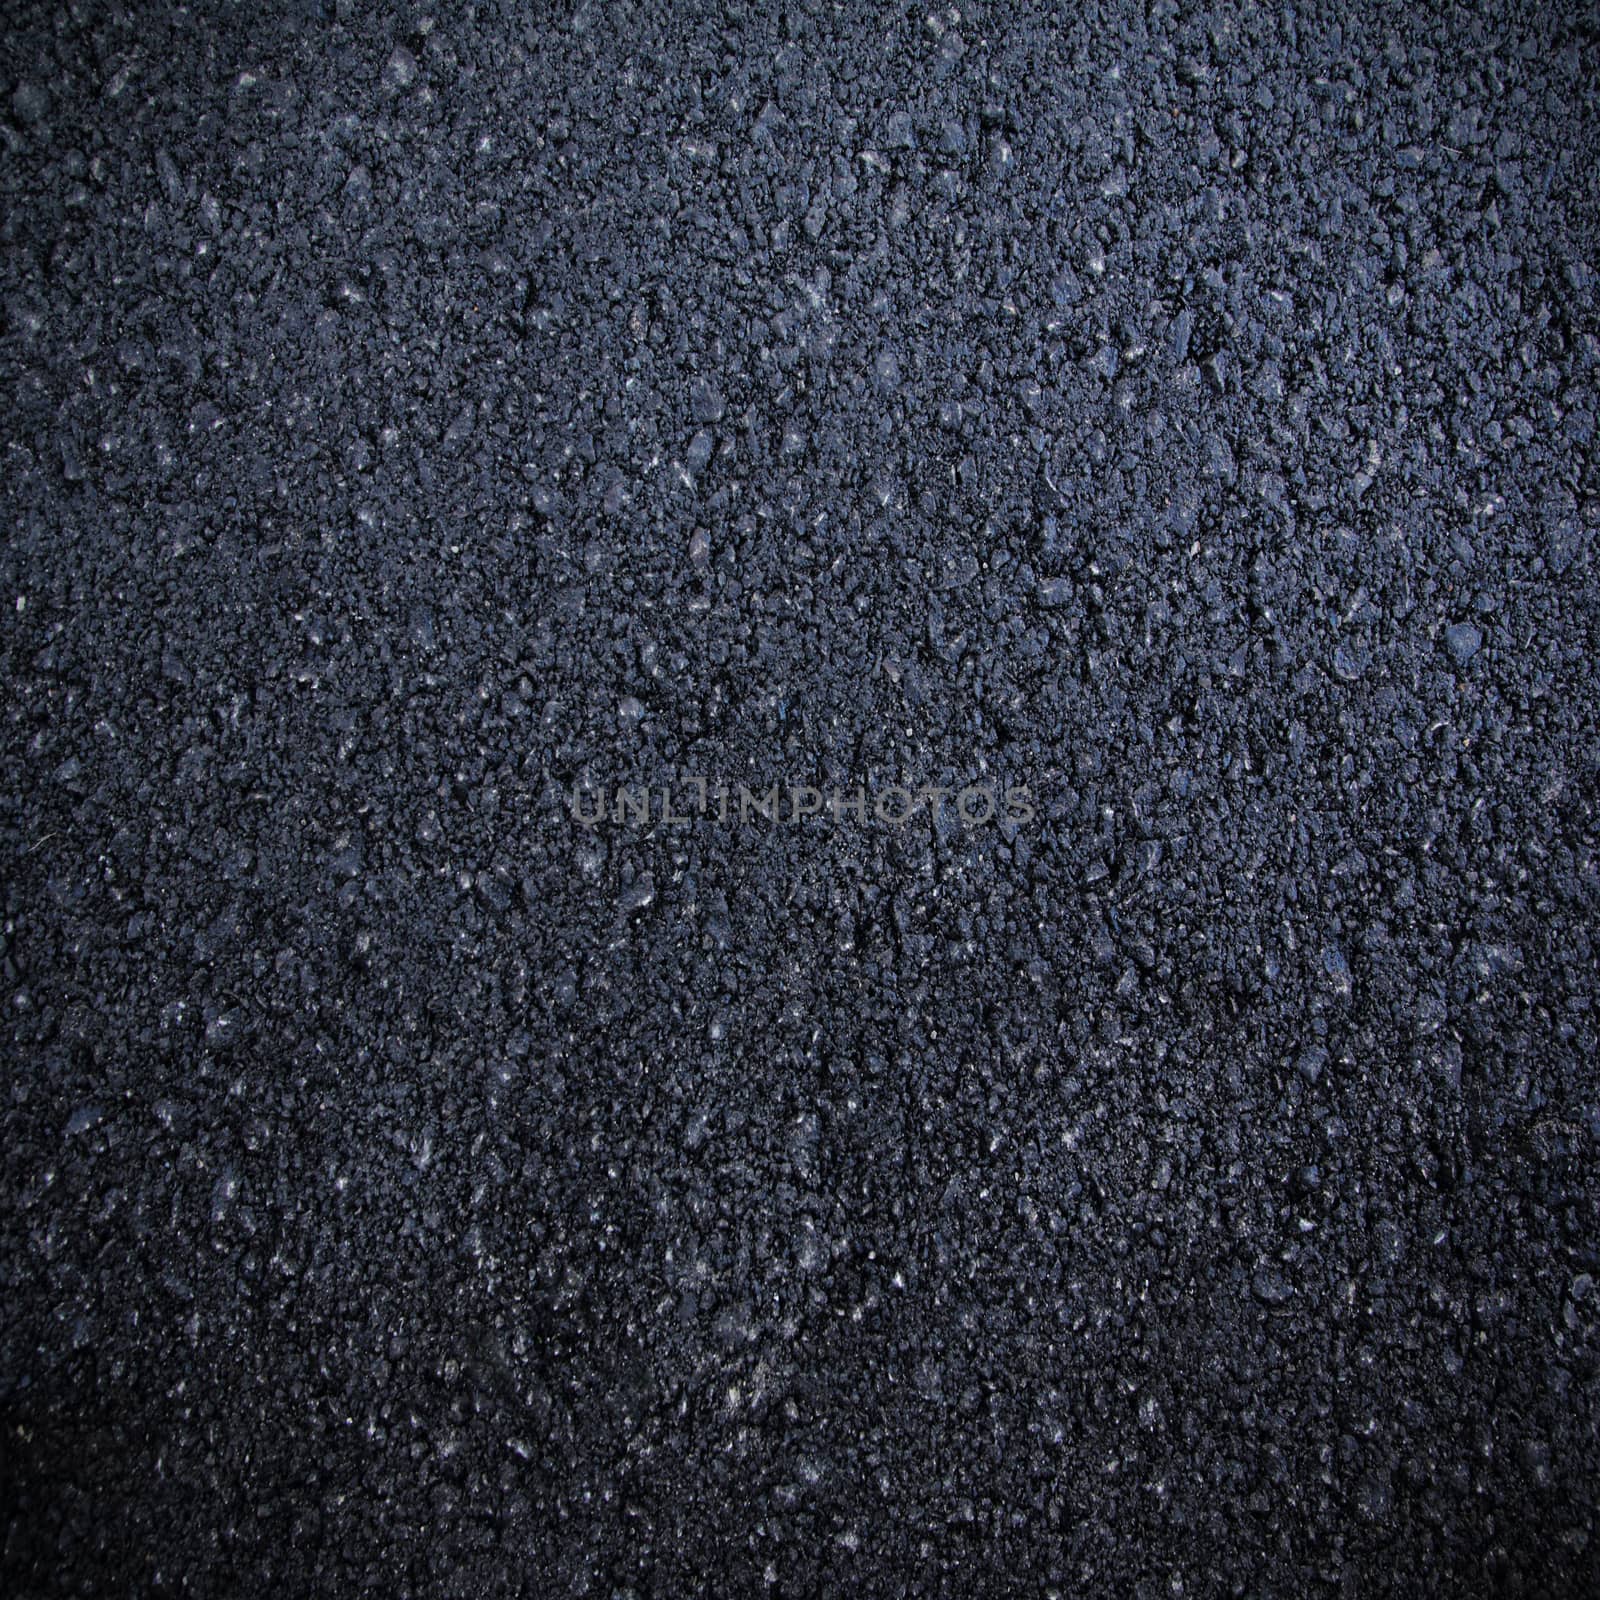 Hot asphalt abstract texture  by wyoosumran